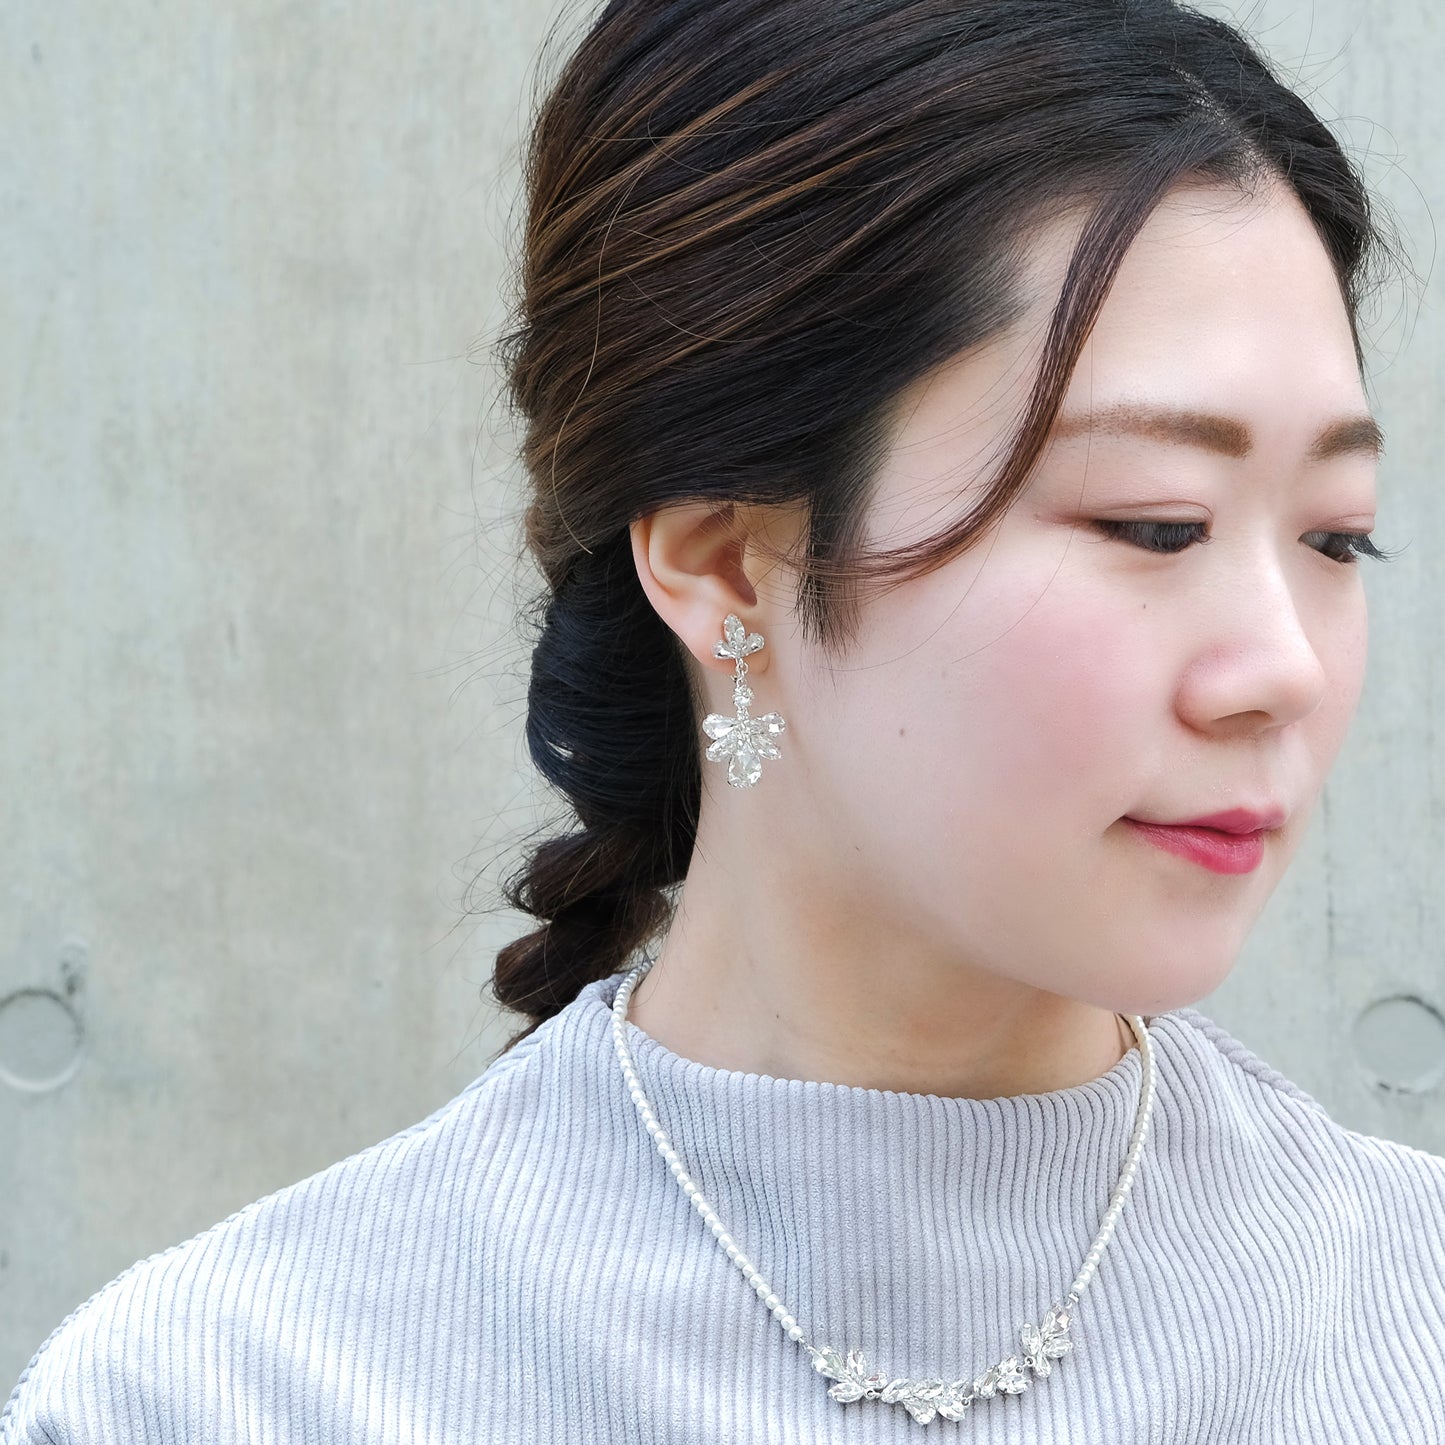 Bijuca motif earrings